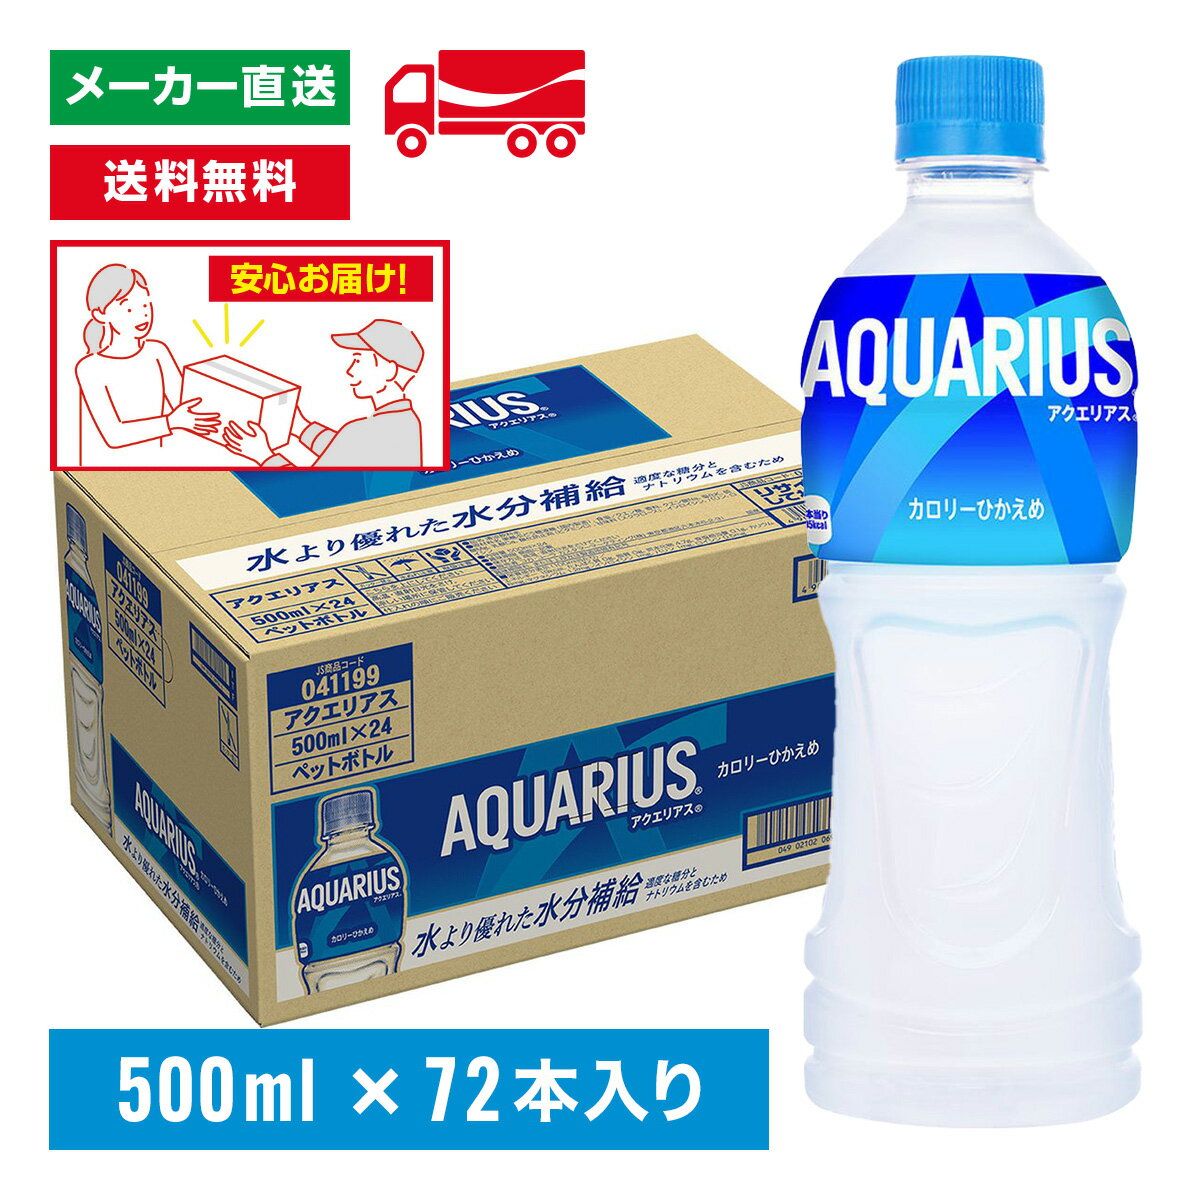 [送料無料]アクエリアス スポーツドリンク 500mL×72本(24本×3箱) 熱中症対策 水分補給 AQUARIUS ペットボトル ケース売り まとめ買い